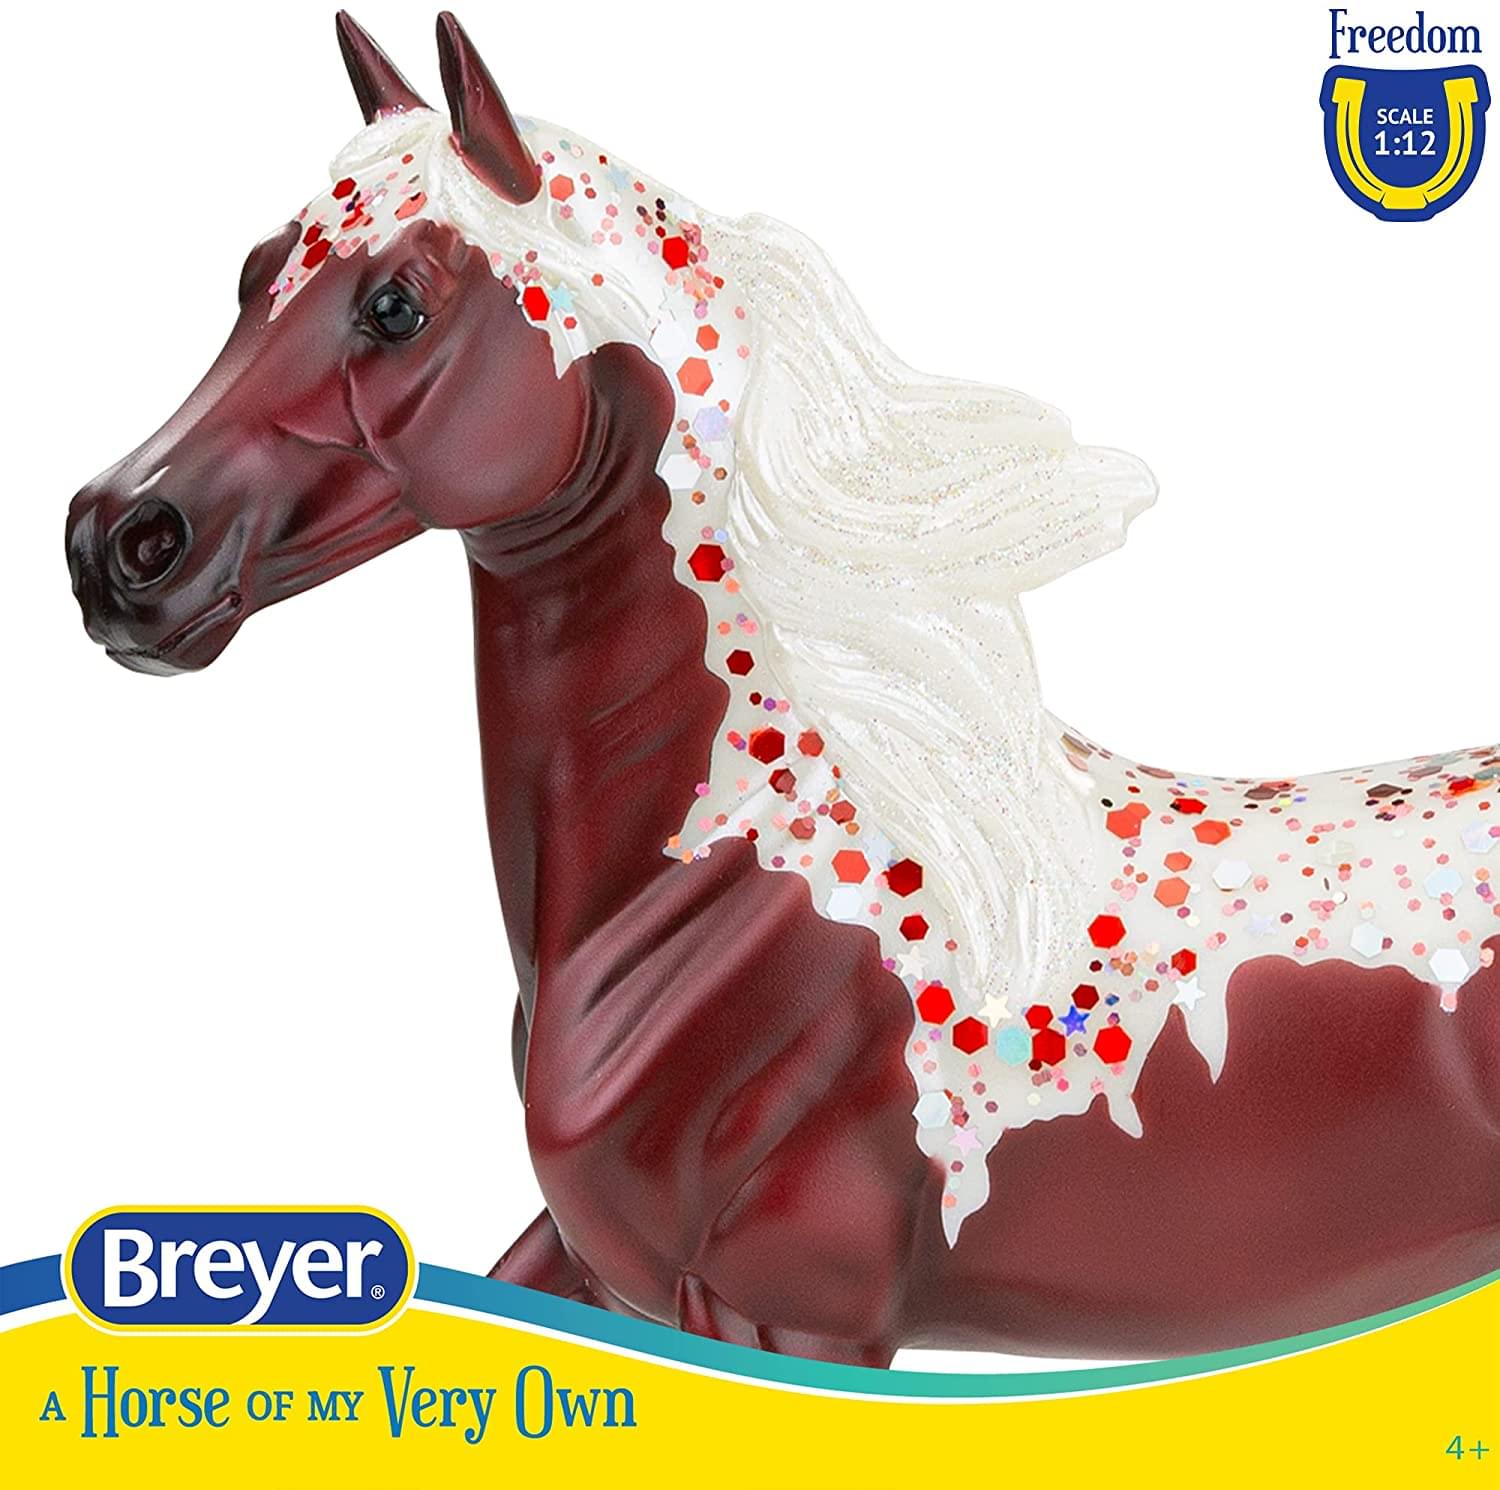 Breyer Freedom Series 1:12 Scale Model Horse | Red Velvet